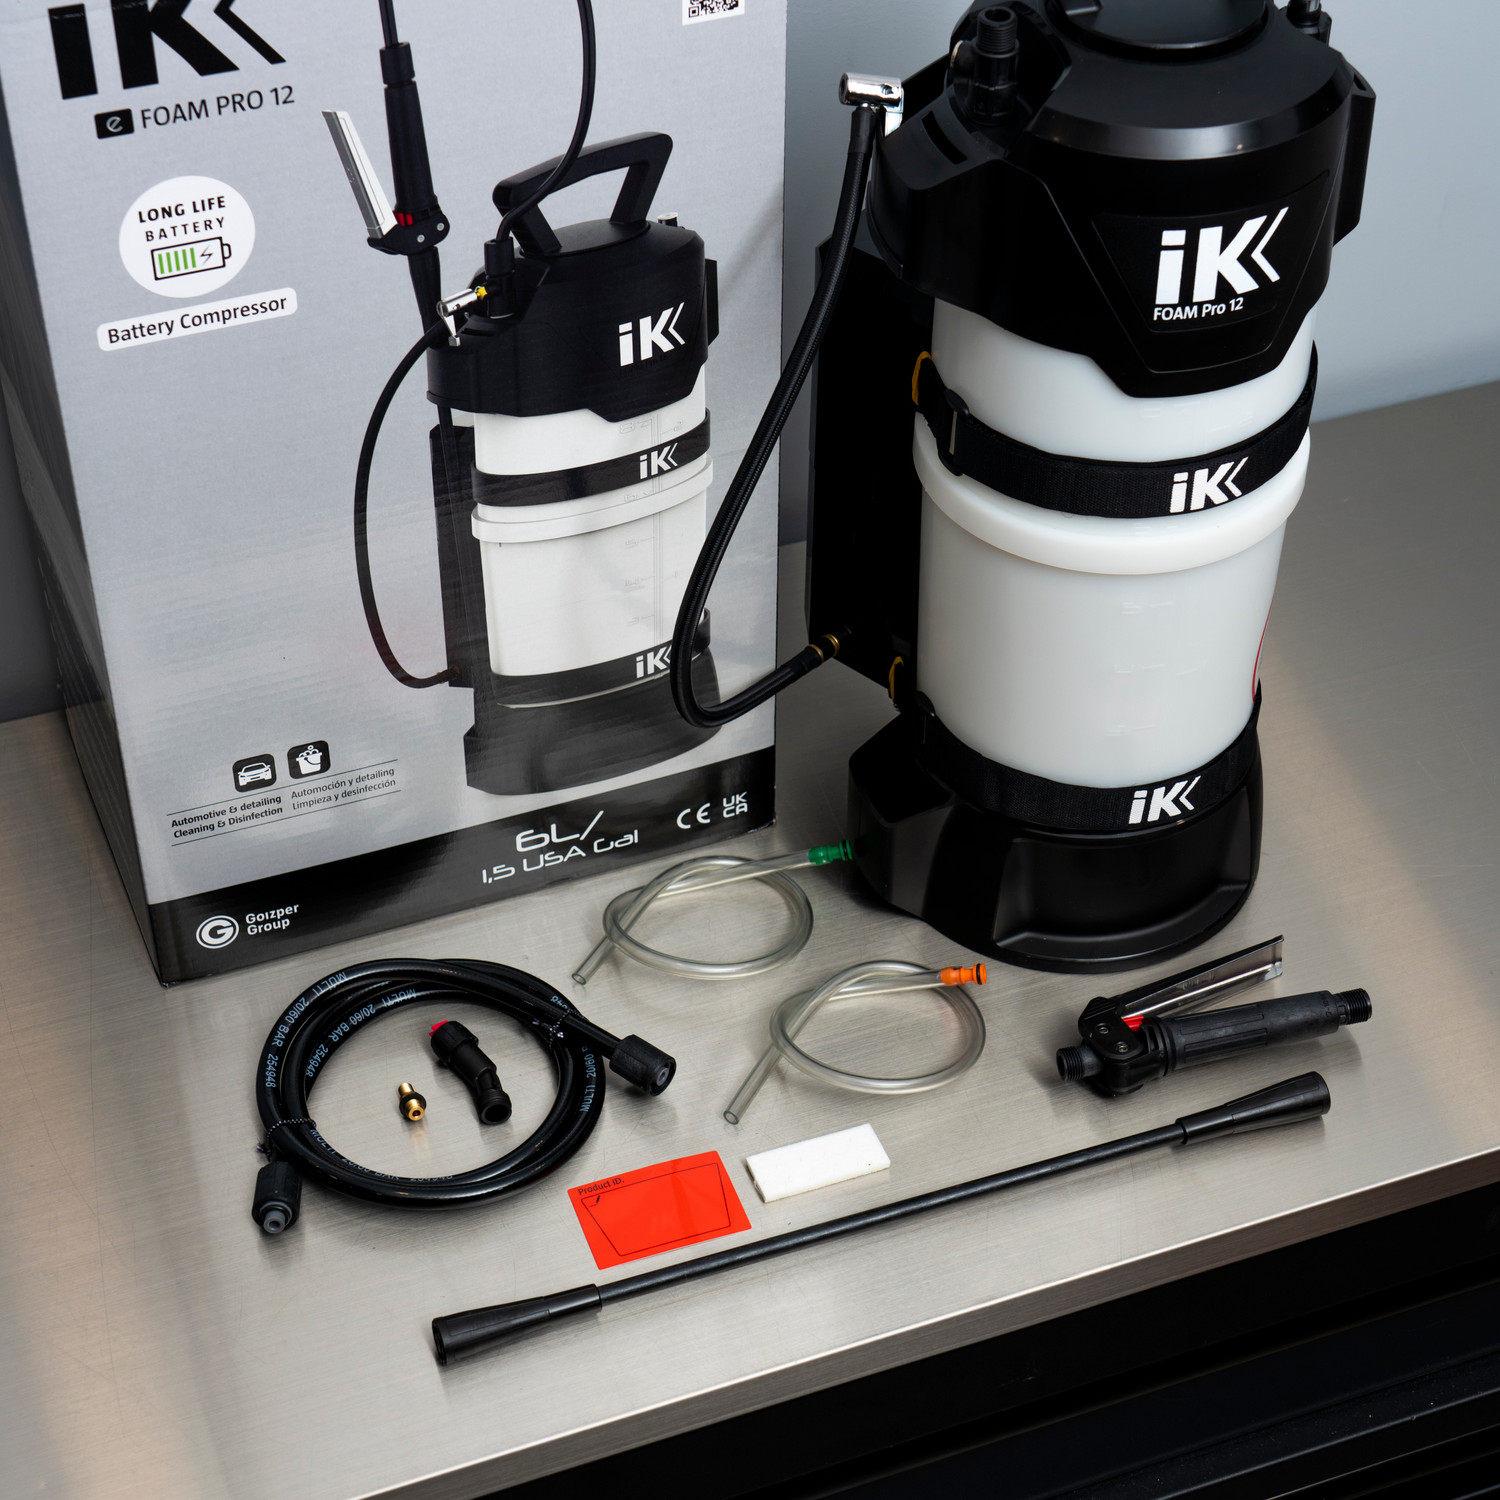 IK e Foam Pro 12 Sprayer - 2.6 Gallons 